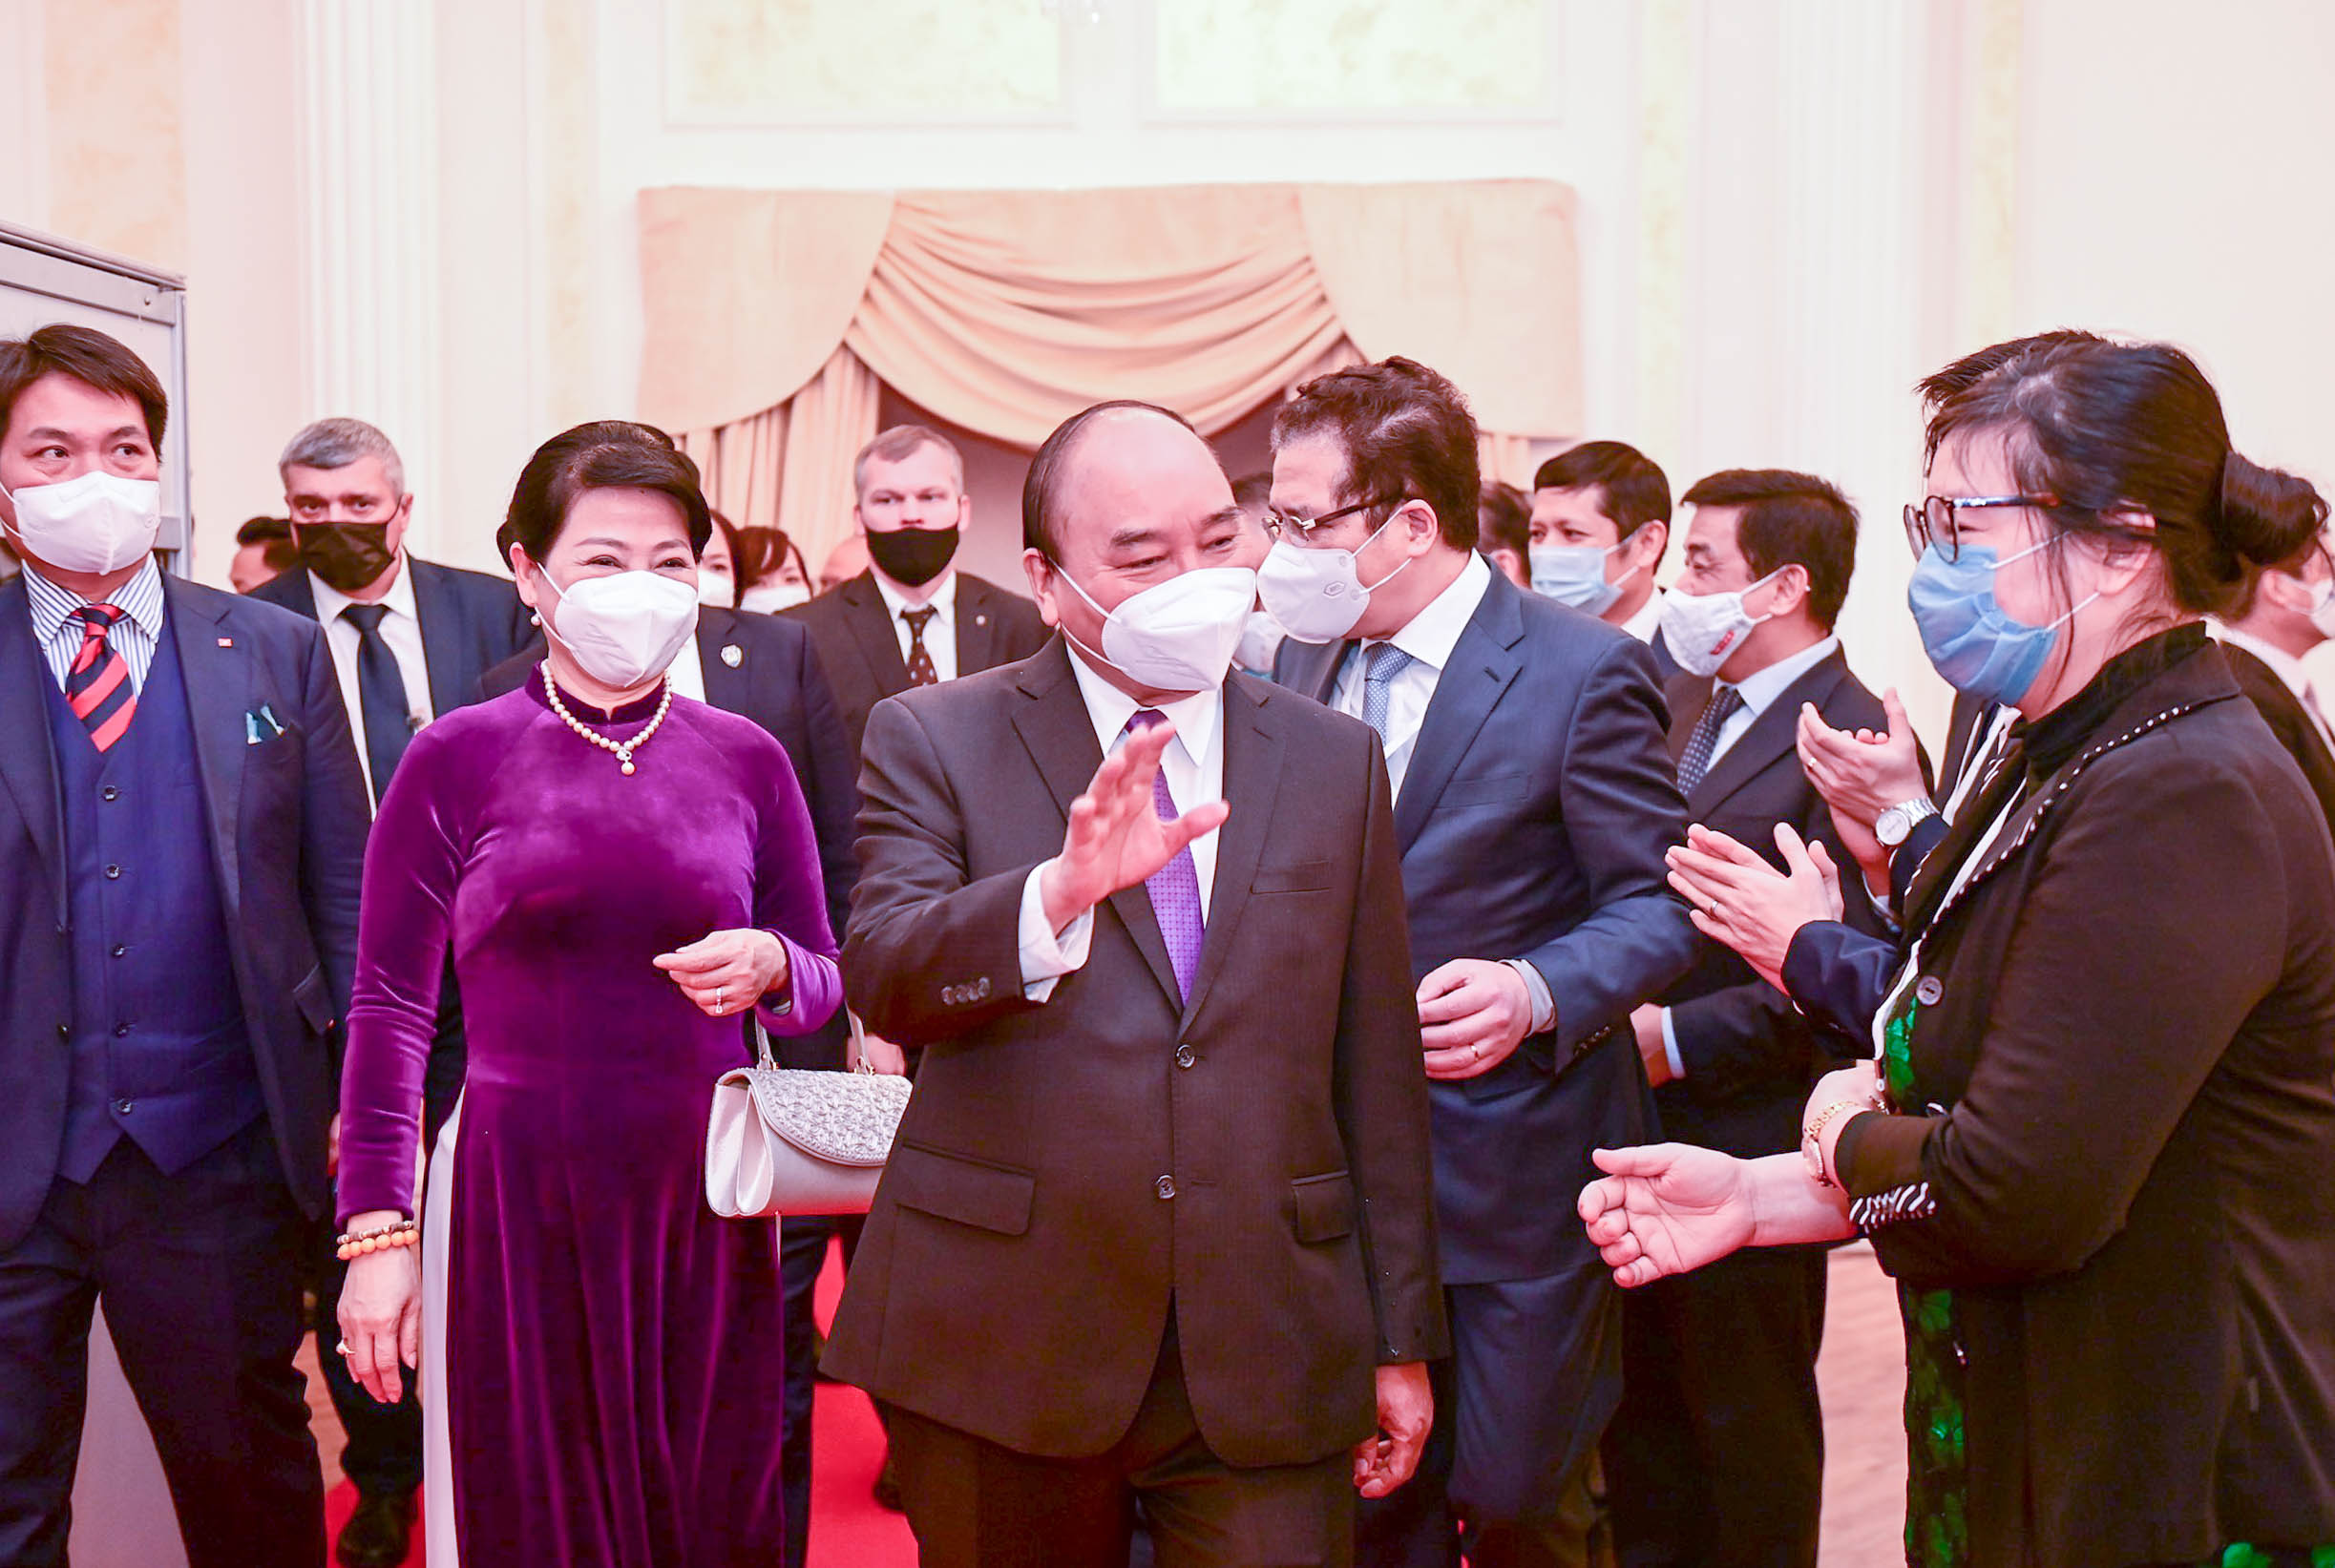 Chủ tịch nước Nguyễn Xuân Phúc gặp gỡ bà con Việt kiều tại Liên bang Nga - Ảnh 2.